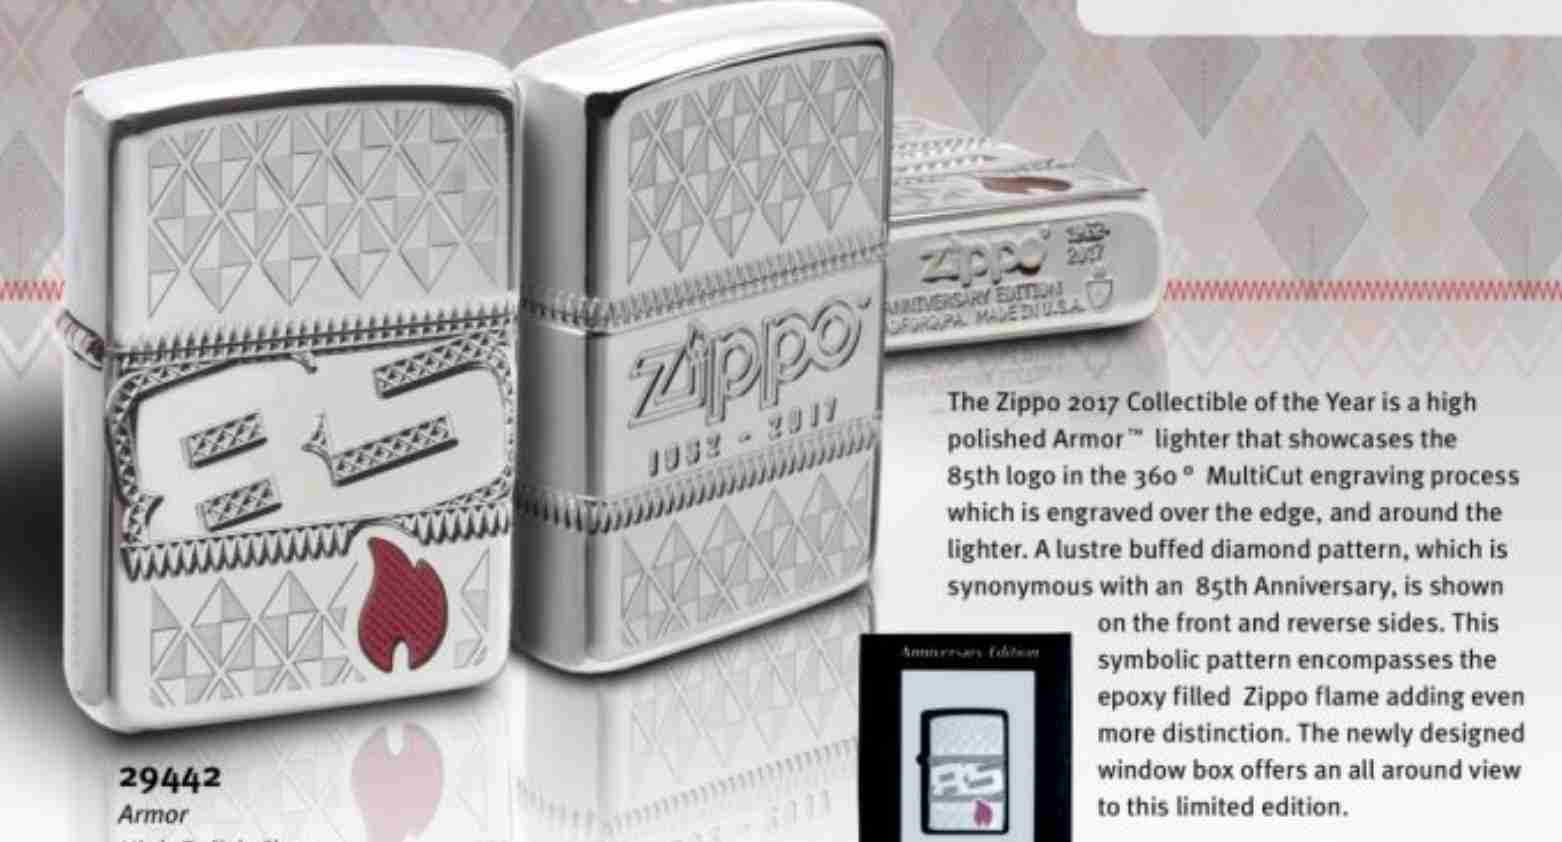 Thú vui sưu tập các phiên bản Zippo kỷ niệm mốc thời gian thành lập